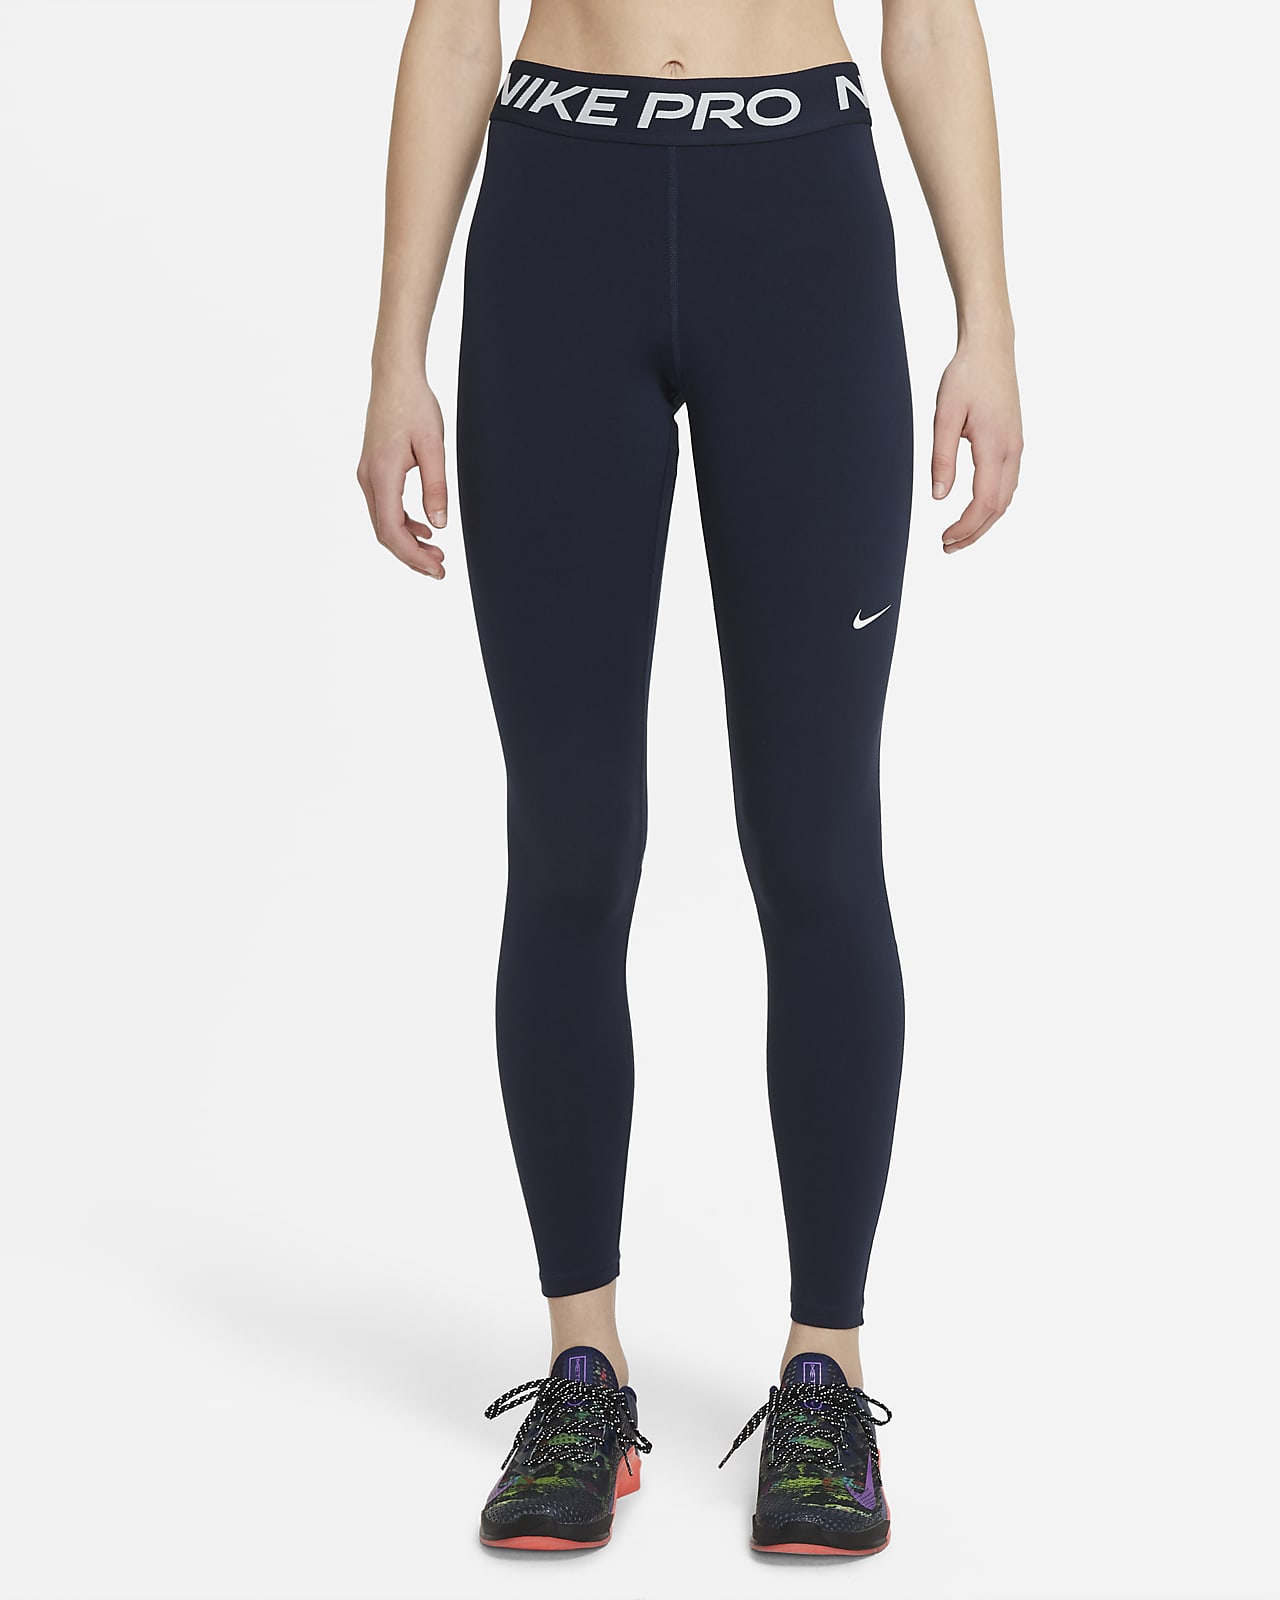 Legging taille mi-haute à empiècements en mesh Nike Pro pour Femme